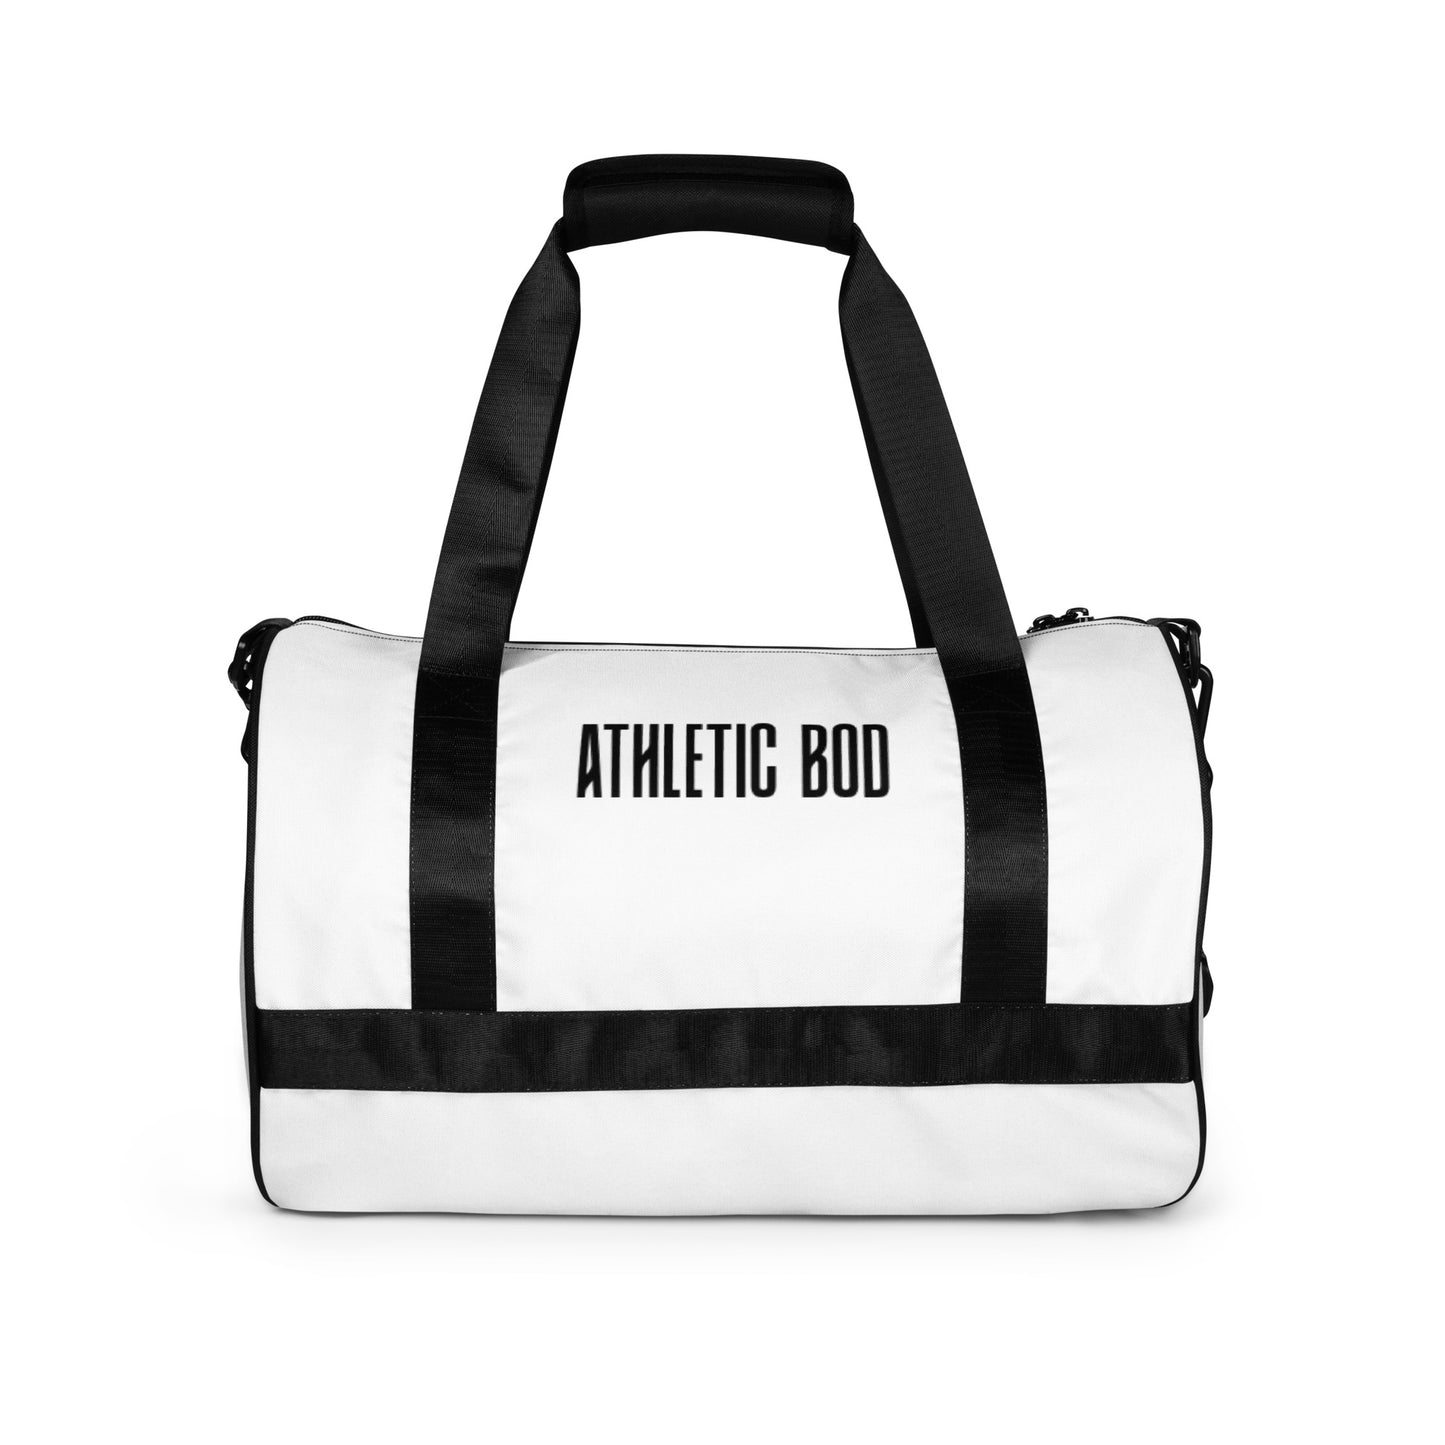 Athletic Bod Gym Bag